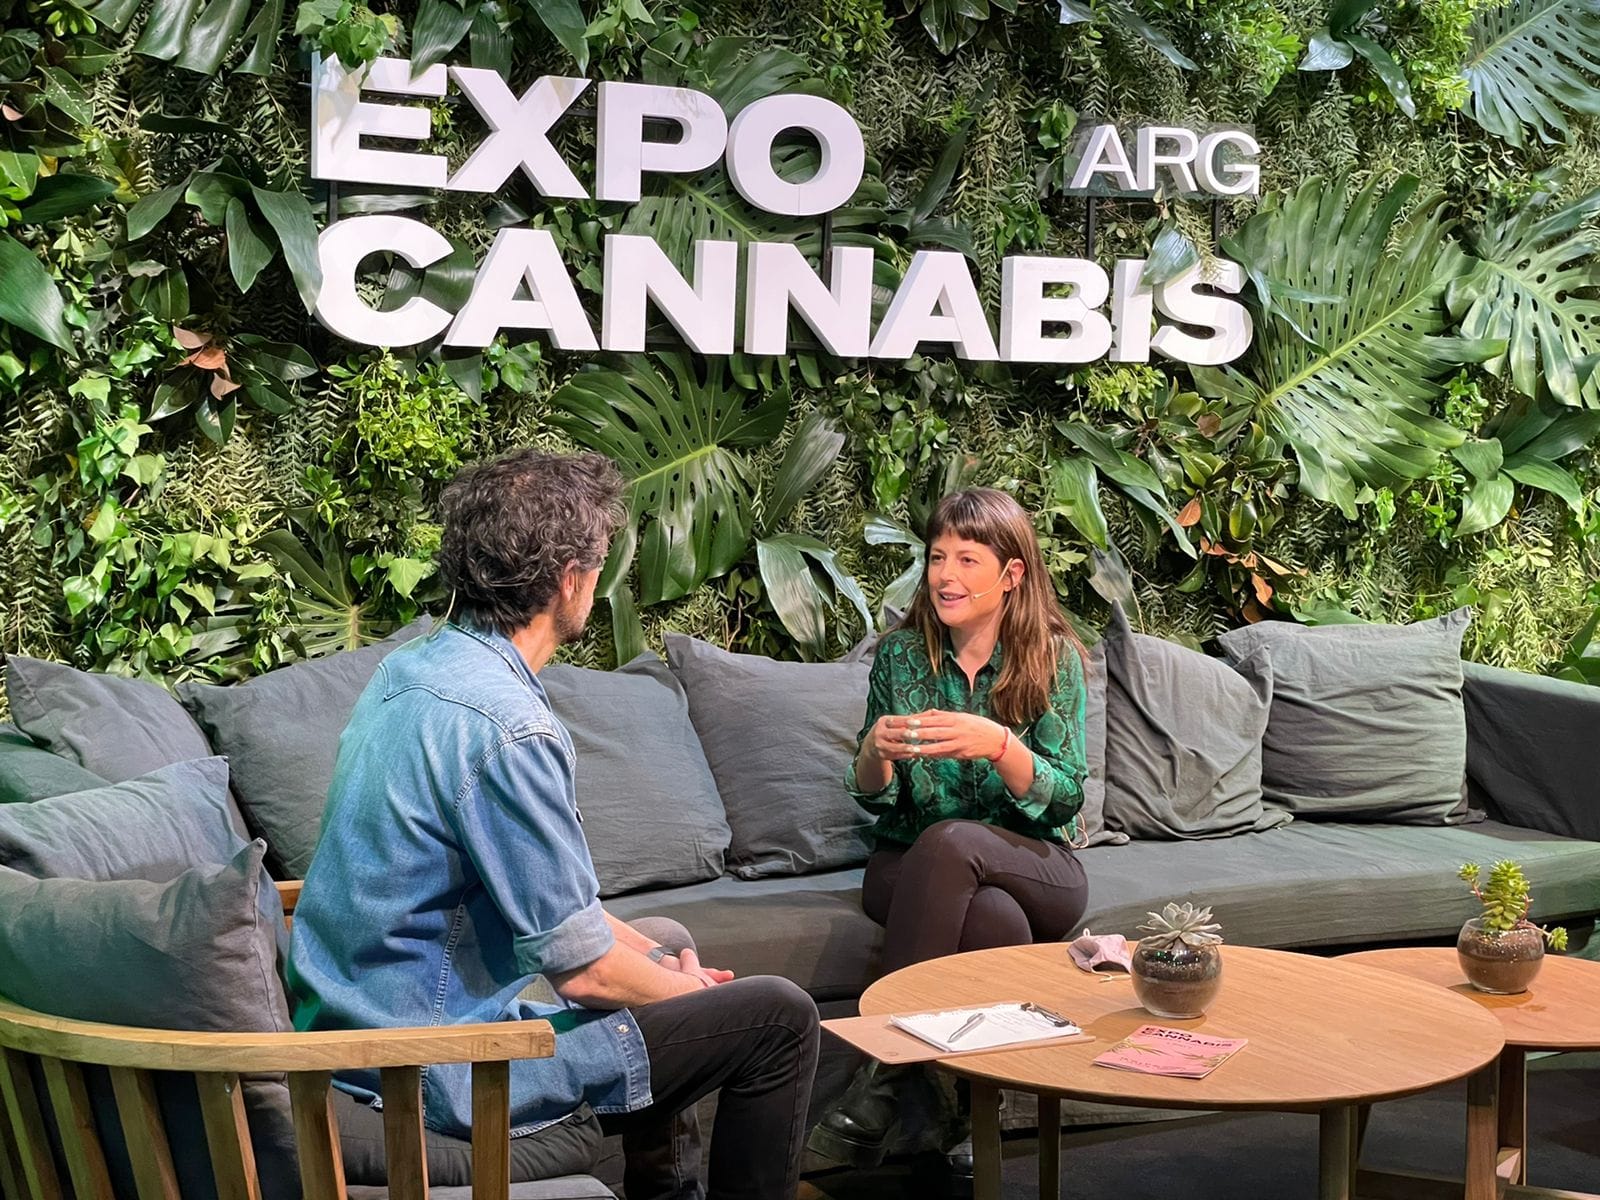 Candidata entrerriana participó del Expo Cannabis en La Rural